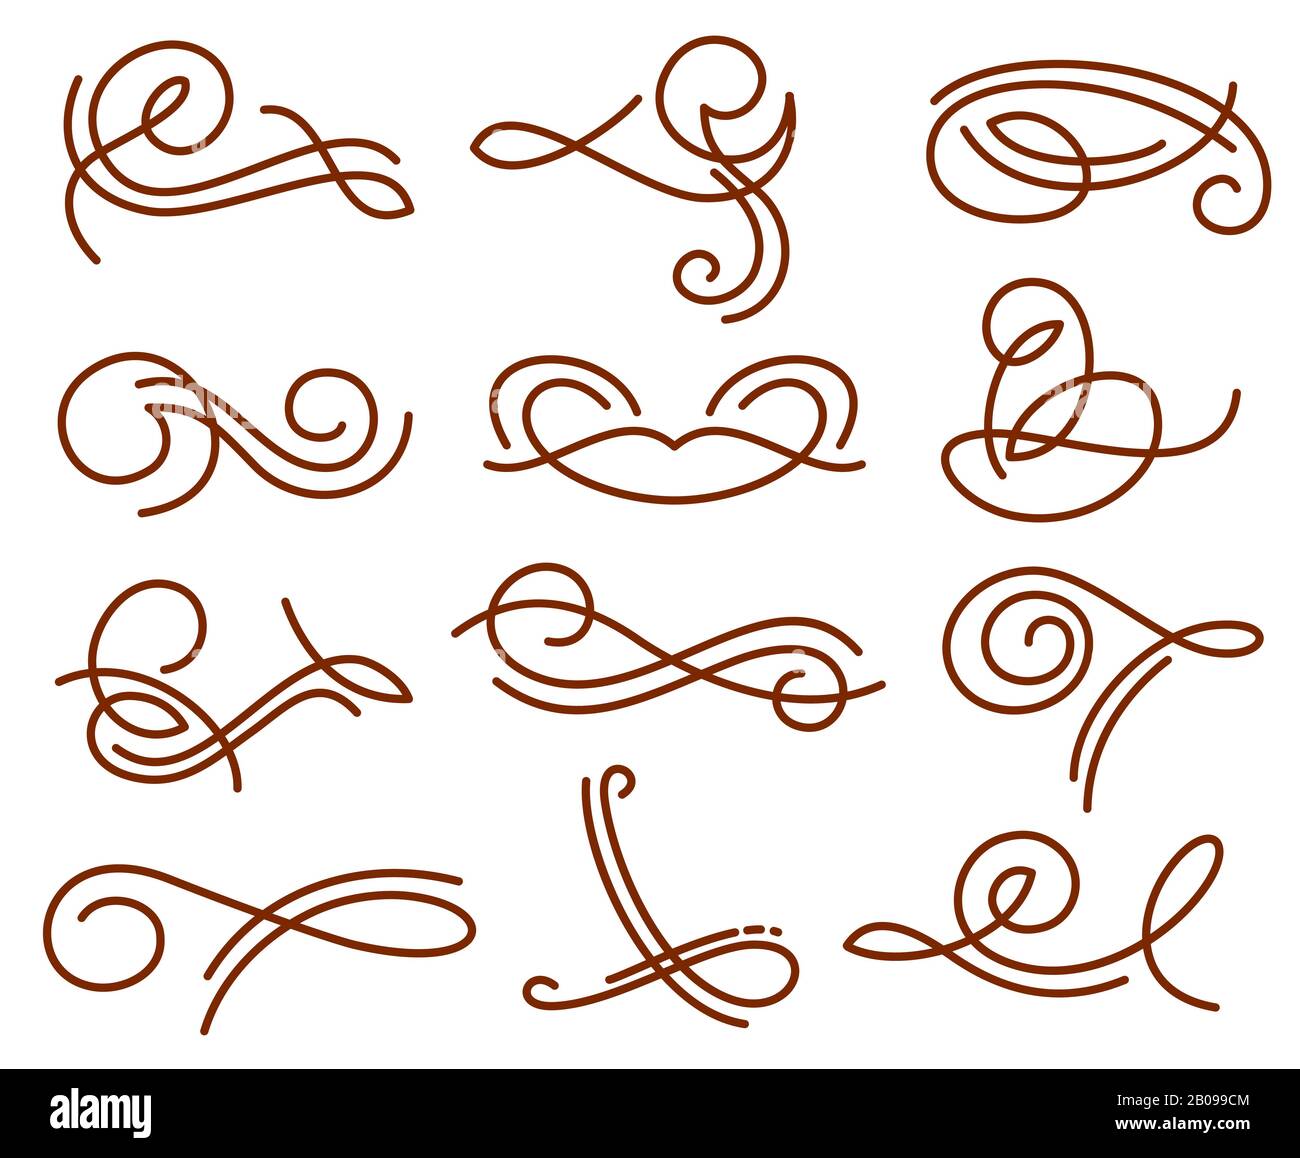 Flourish swirls, elementi vettoriali per calligrafia vintage. Swirl fiorire tatuaggio hennè, illustrazione astratta della linea di turbolenza Illustrazione Vettoriale